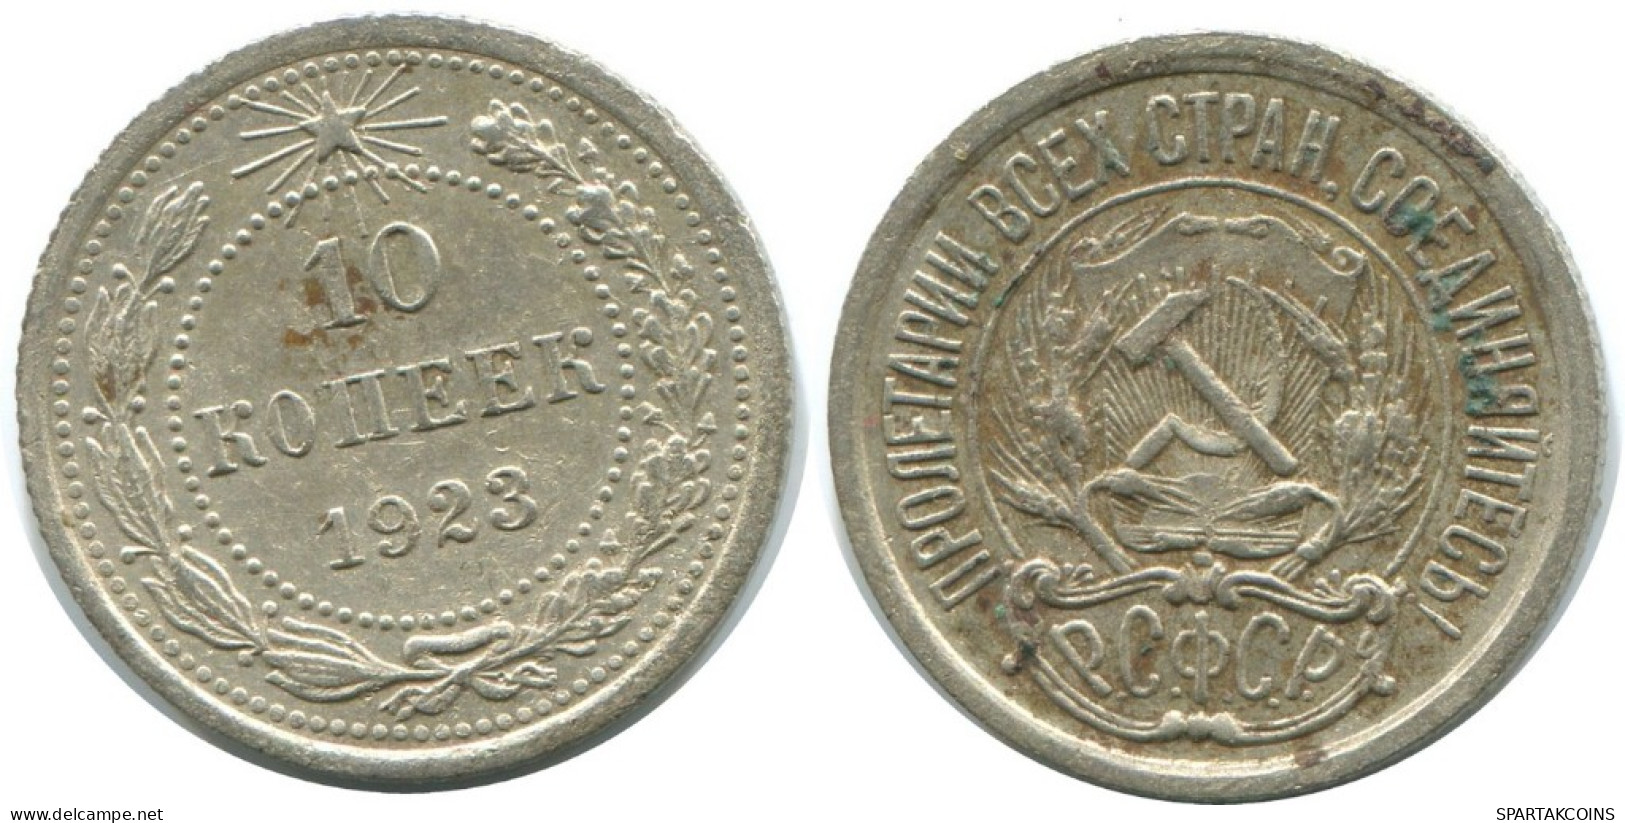 10 KOPEKS 1923 RUSSLAND RUSSIA RSFSR SILBER Münze HIGH GRADE #AE888.4.D.A - Russie